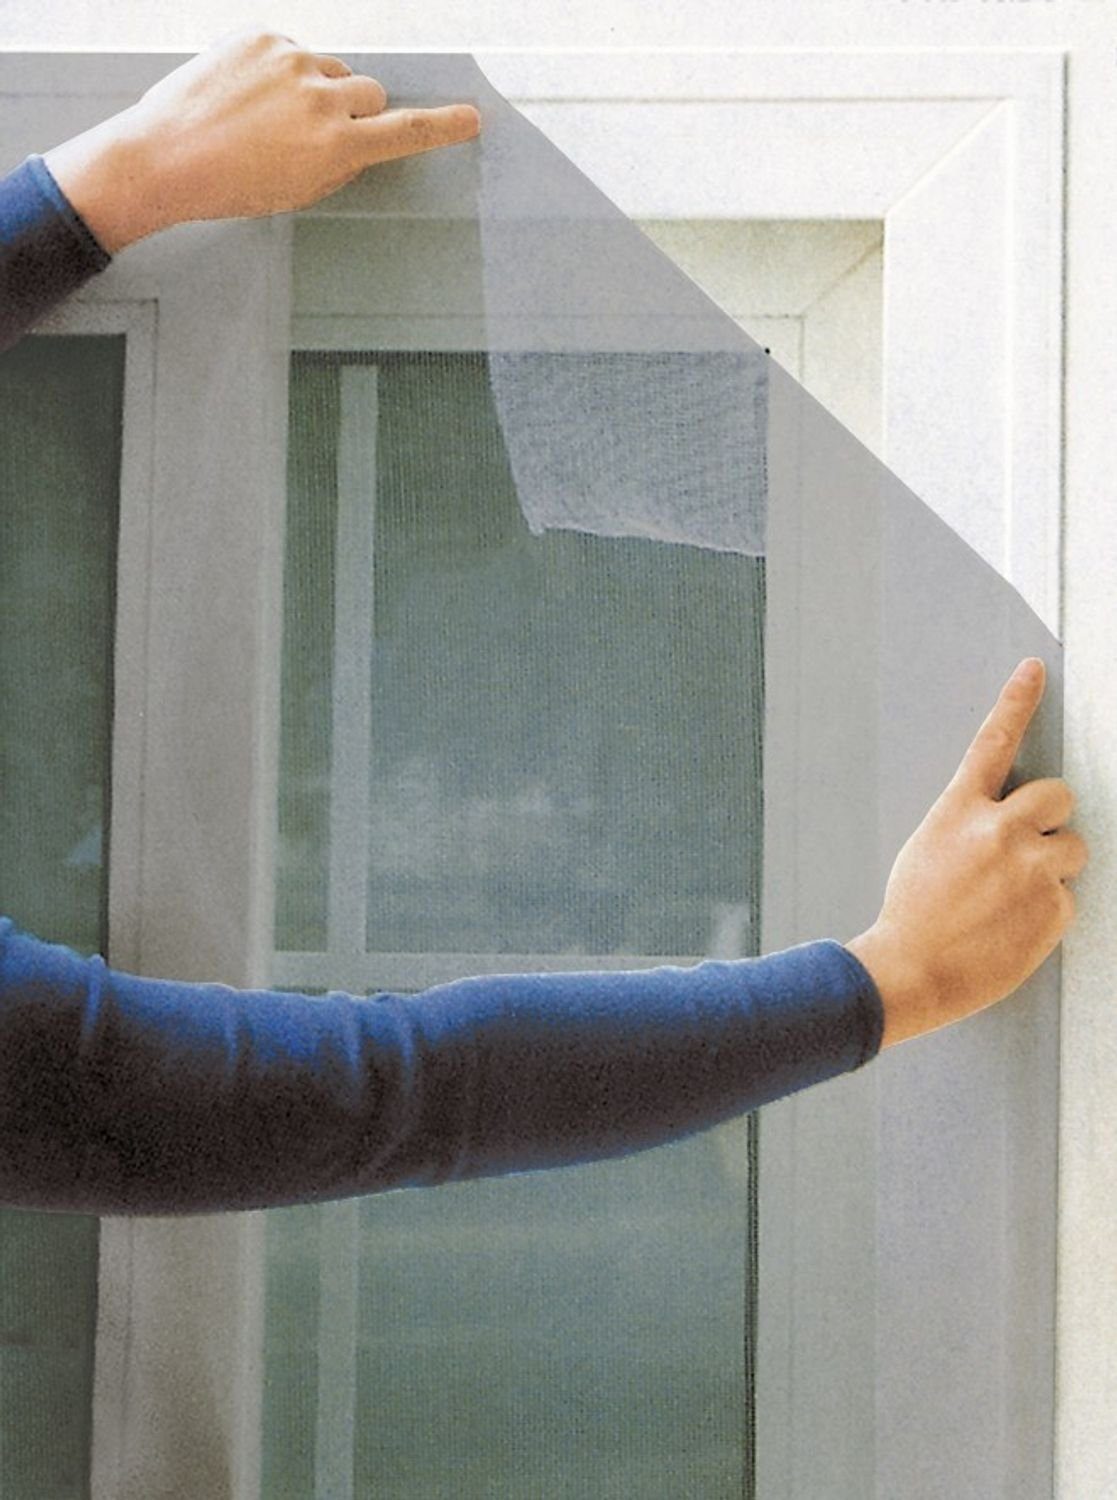 BURI Fliegengitter-Gewebe Fliegengitter für Fenster 130x150cm schwarz weiß Insektenschutz Insekt